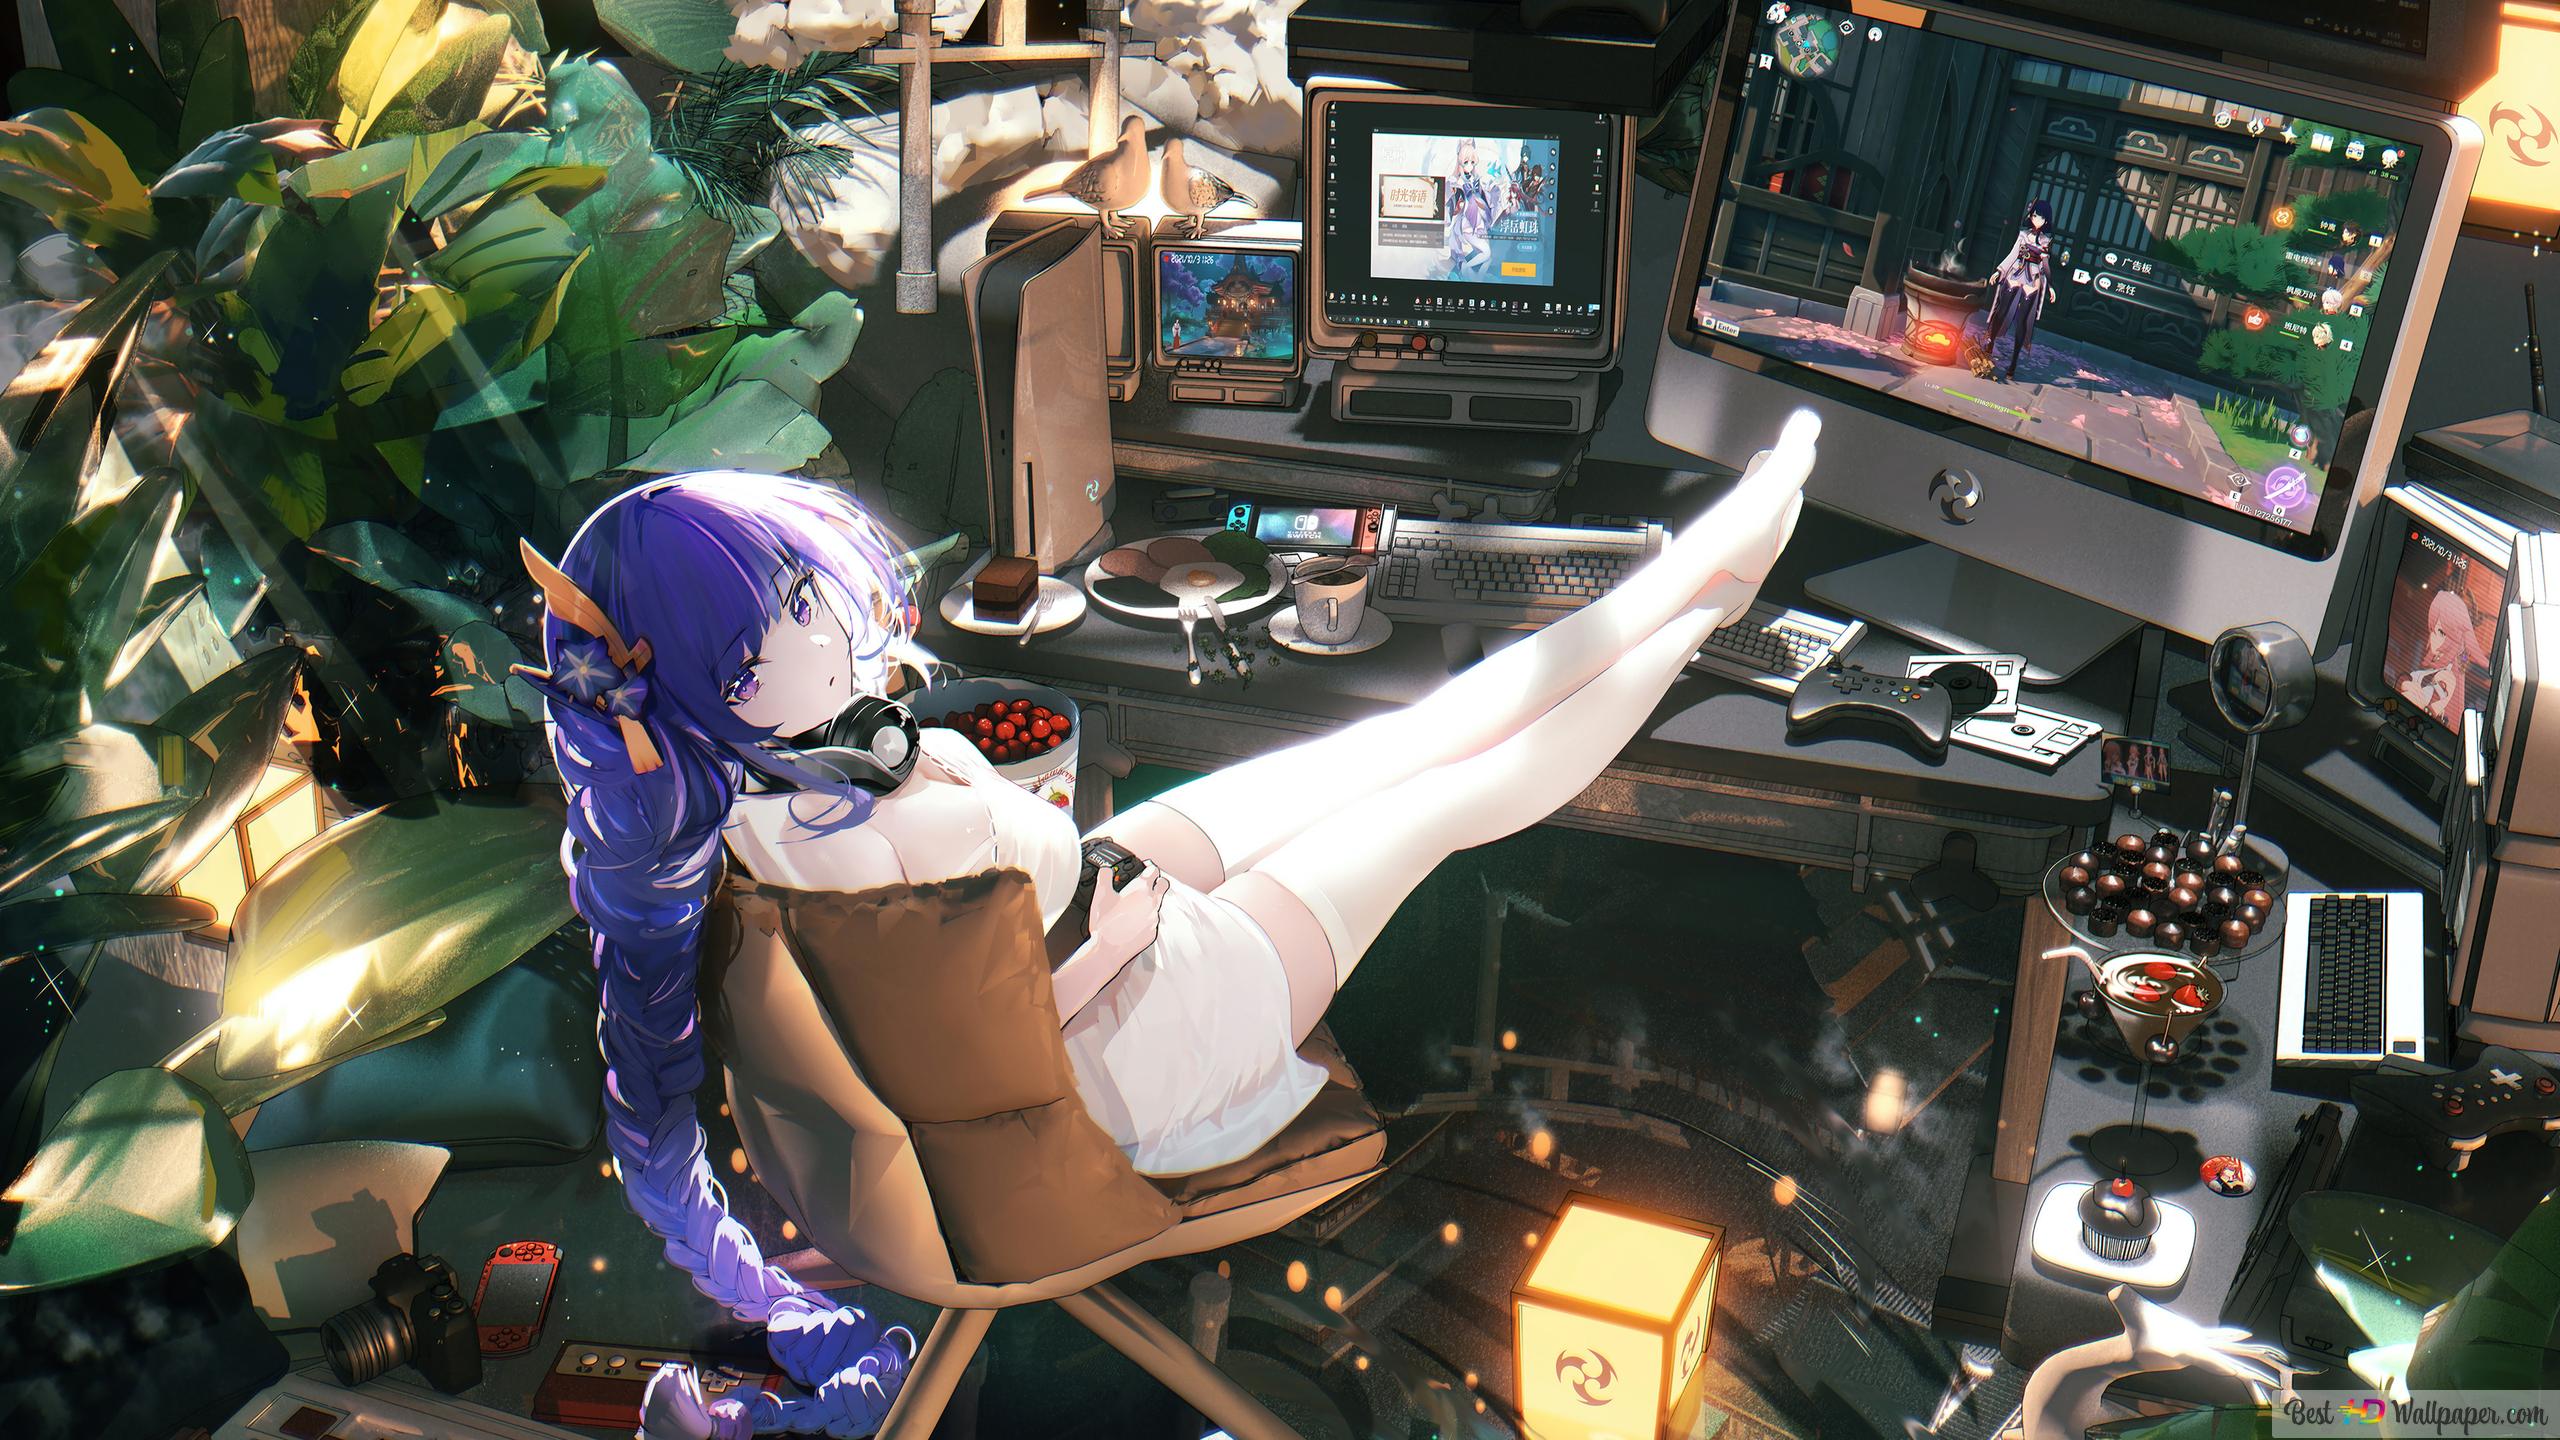 Gamer Anime Girl Desktop Setup 4K wallpaper download